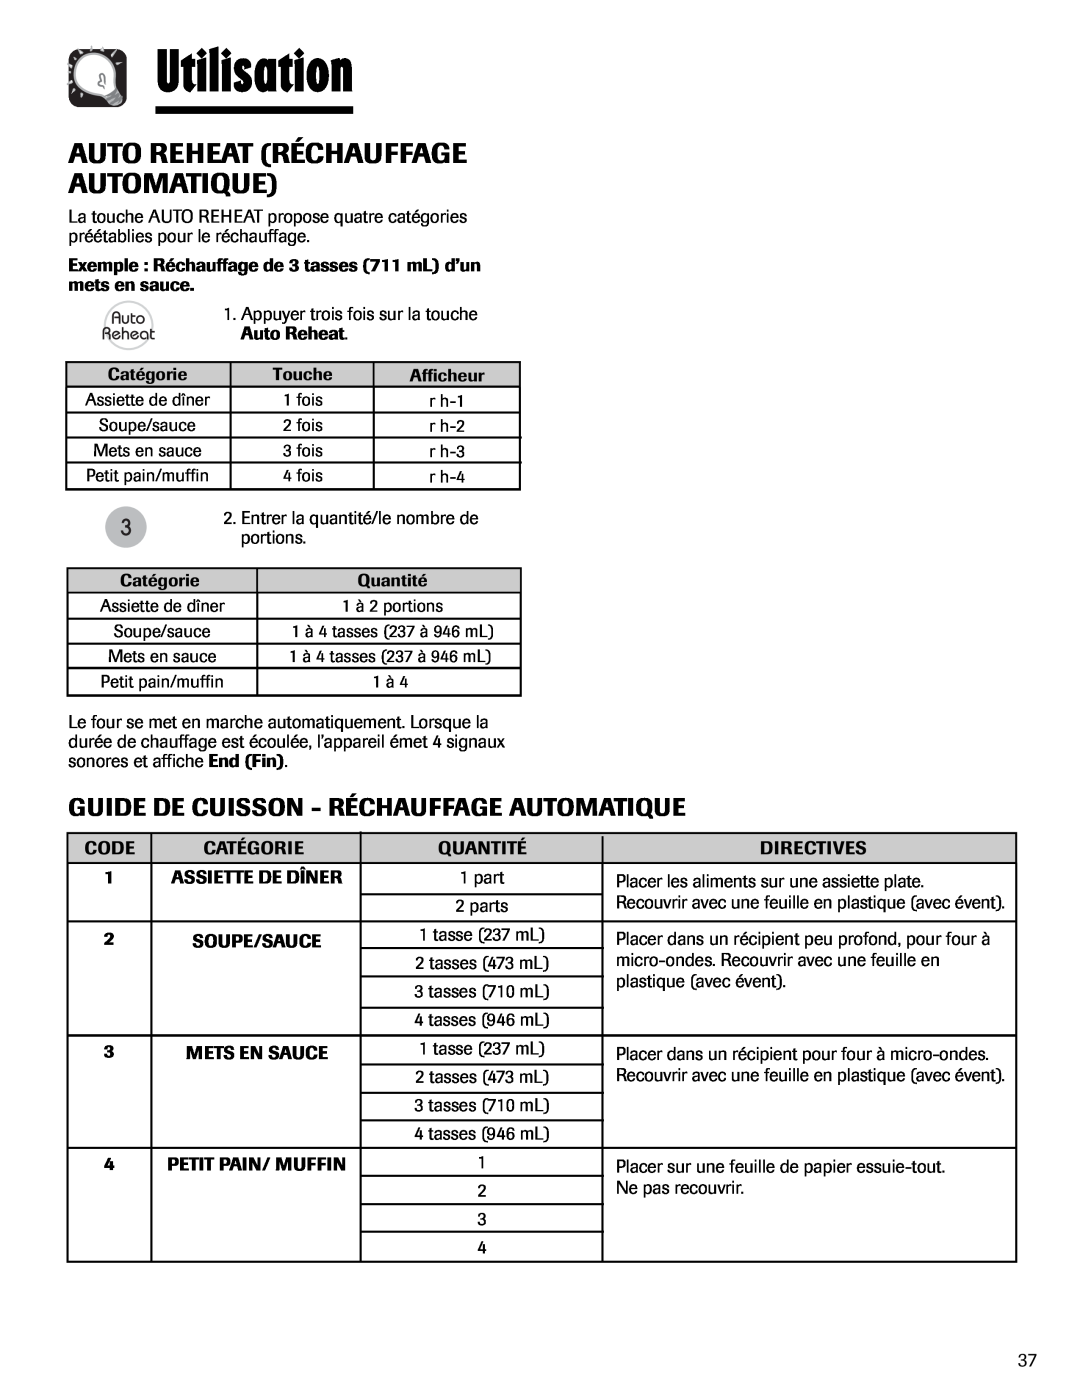 Maytag UMV1152BA Auto Reheat Réchauffage Automatique, Utilisation, Guide De Cuisson - Réchauffage Automatique 